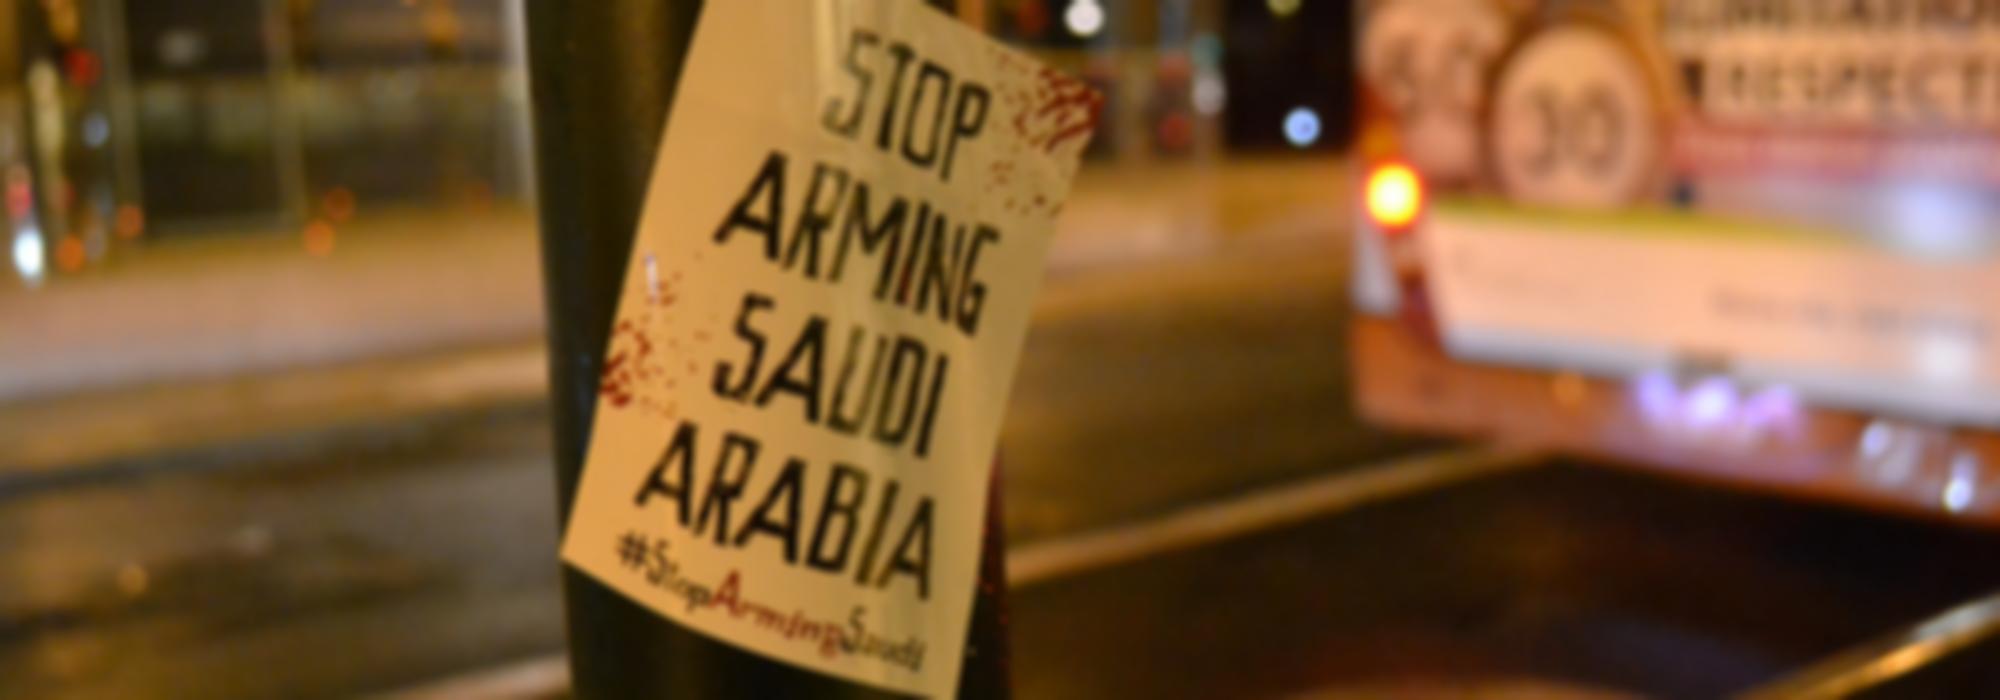 de foto toont een sticker op een lantaarnpaal met daarop Stop Arming Saudi Arabia